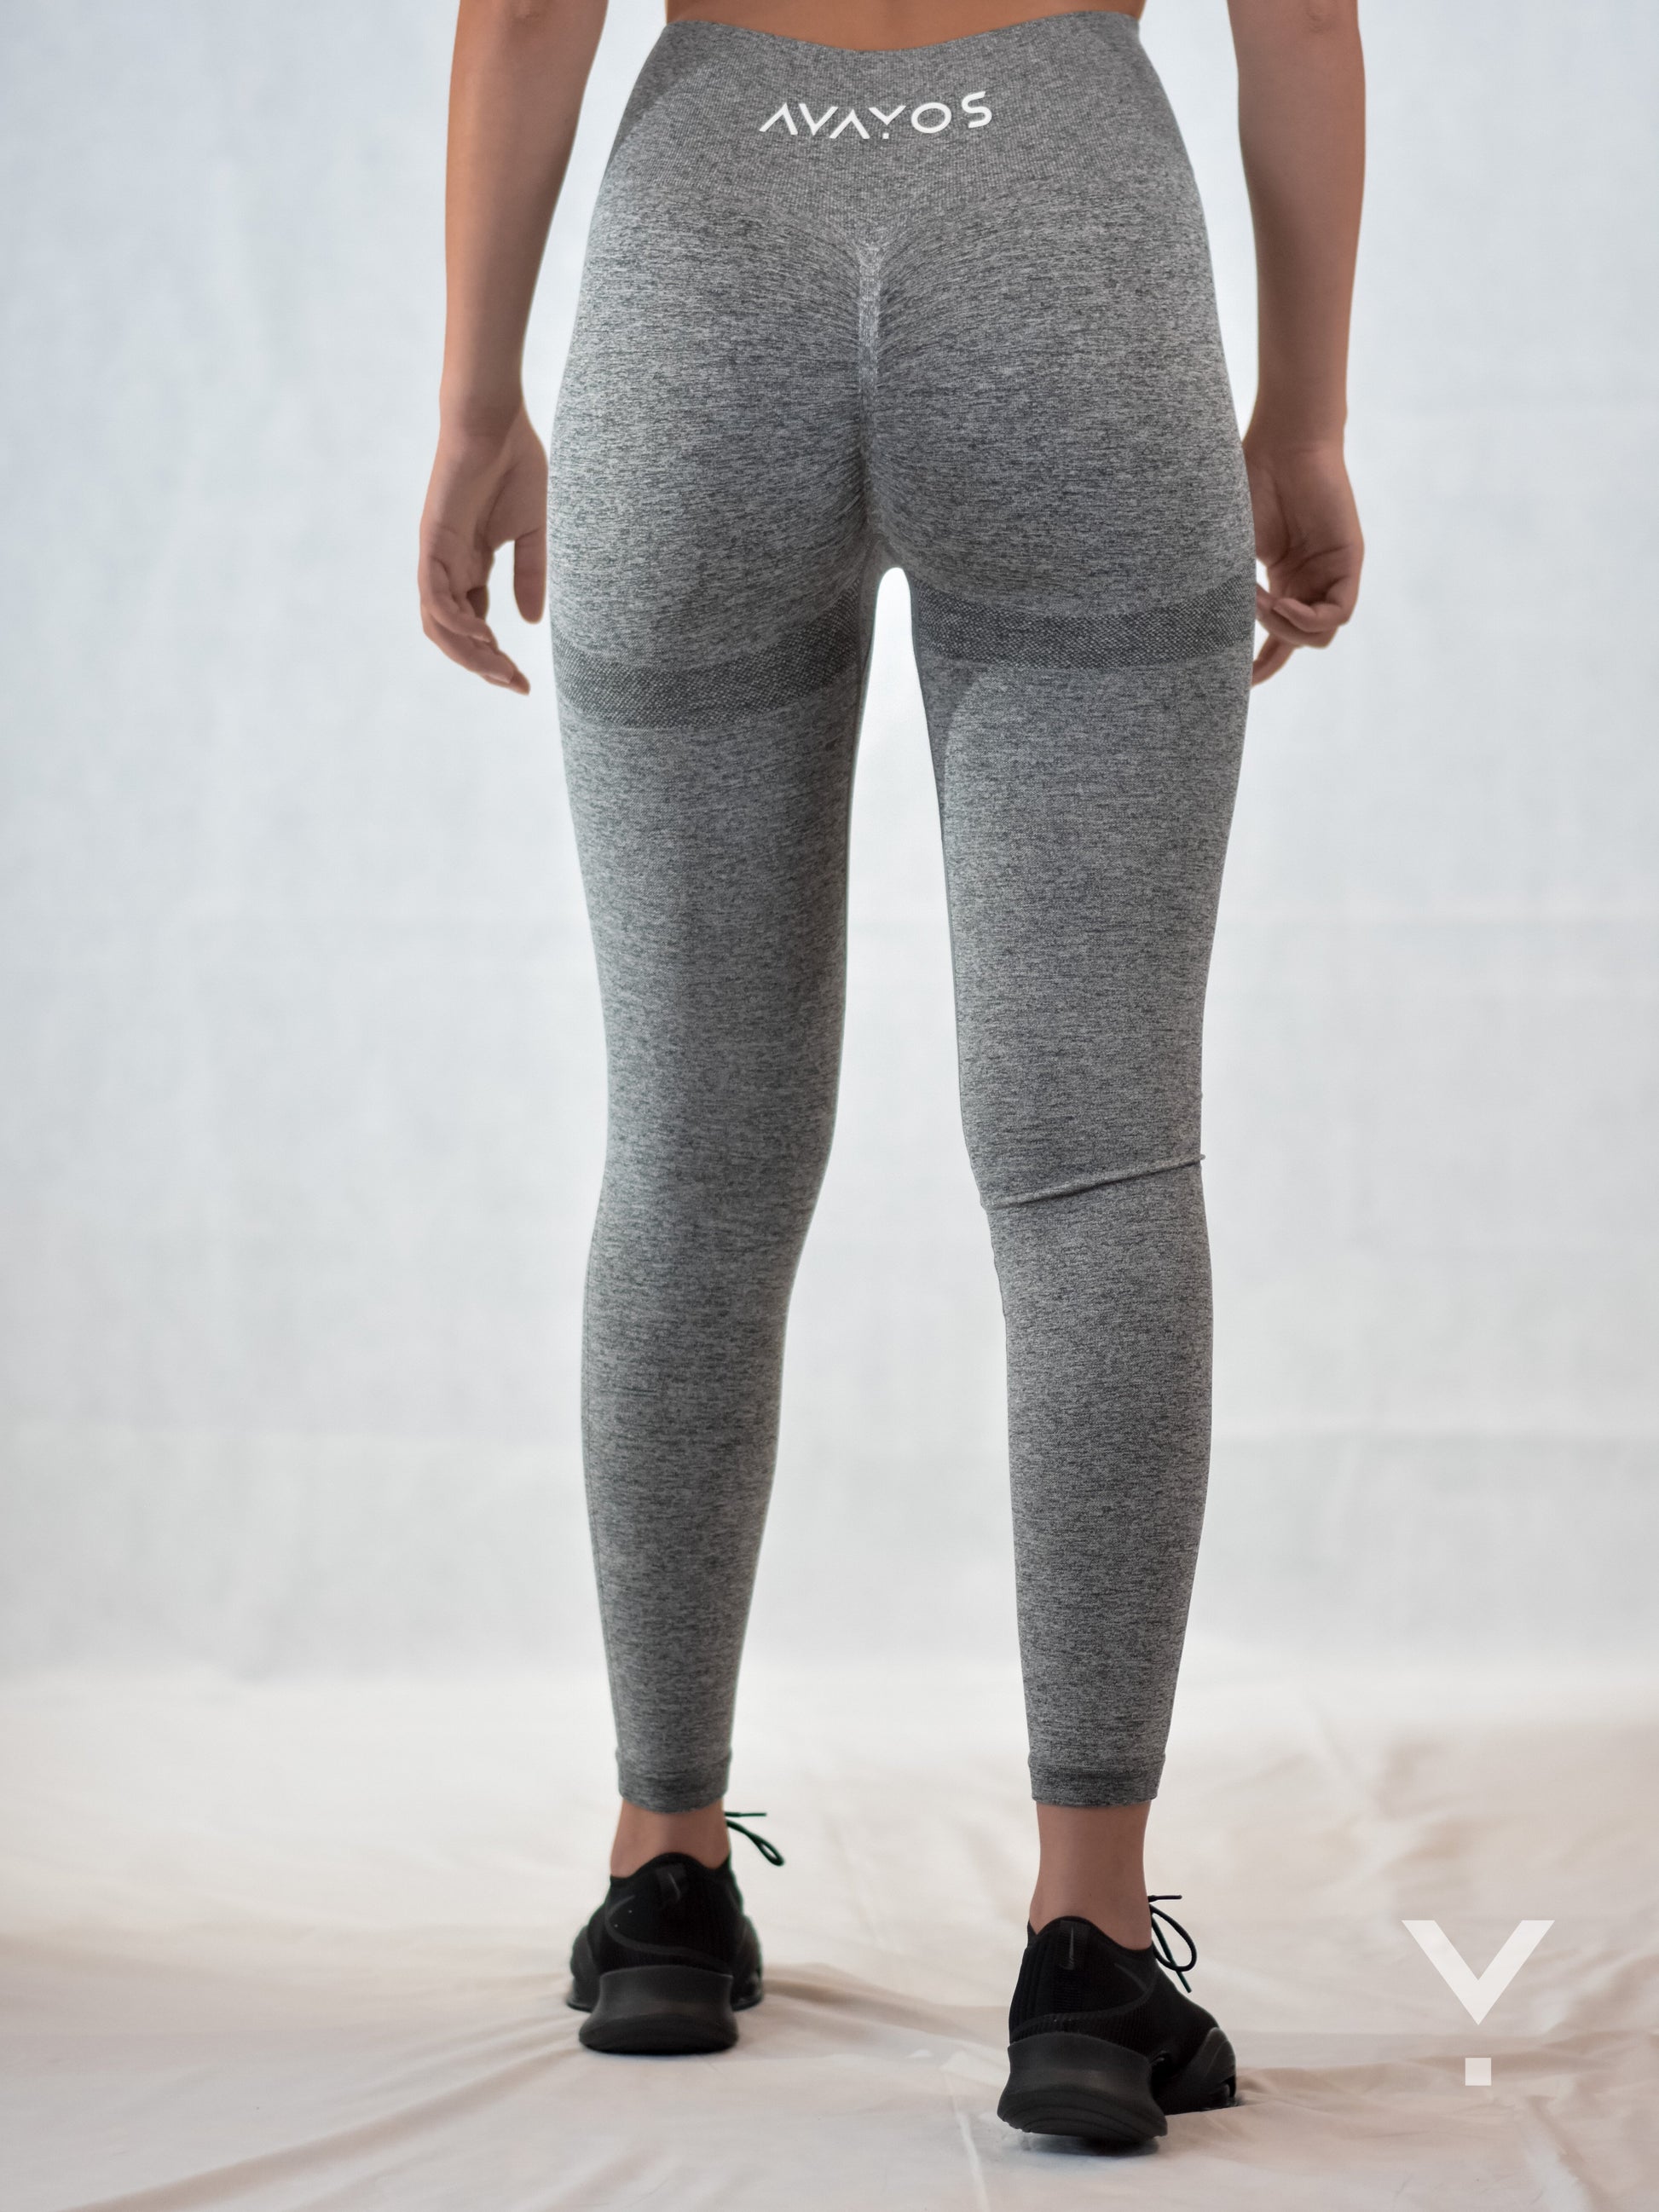 https://avayos.com.au/cdn/shop/products/aero-leggings-grey-leggings-653.jpg?v=1685434641&width=1946